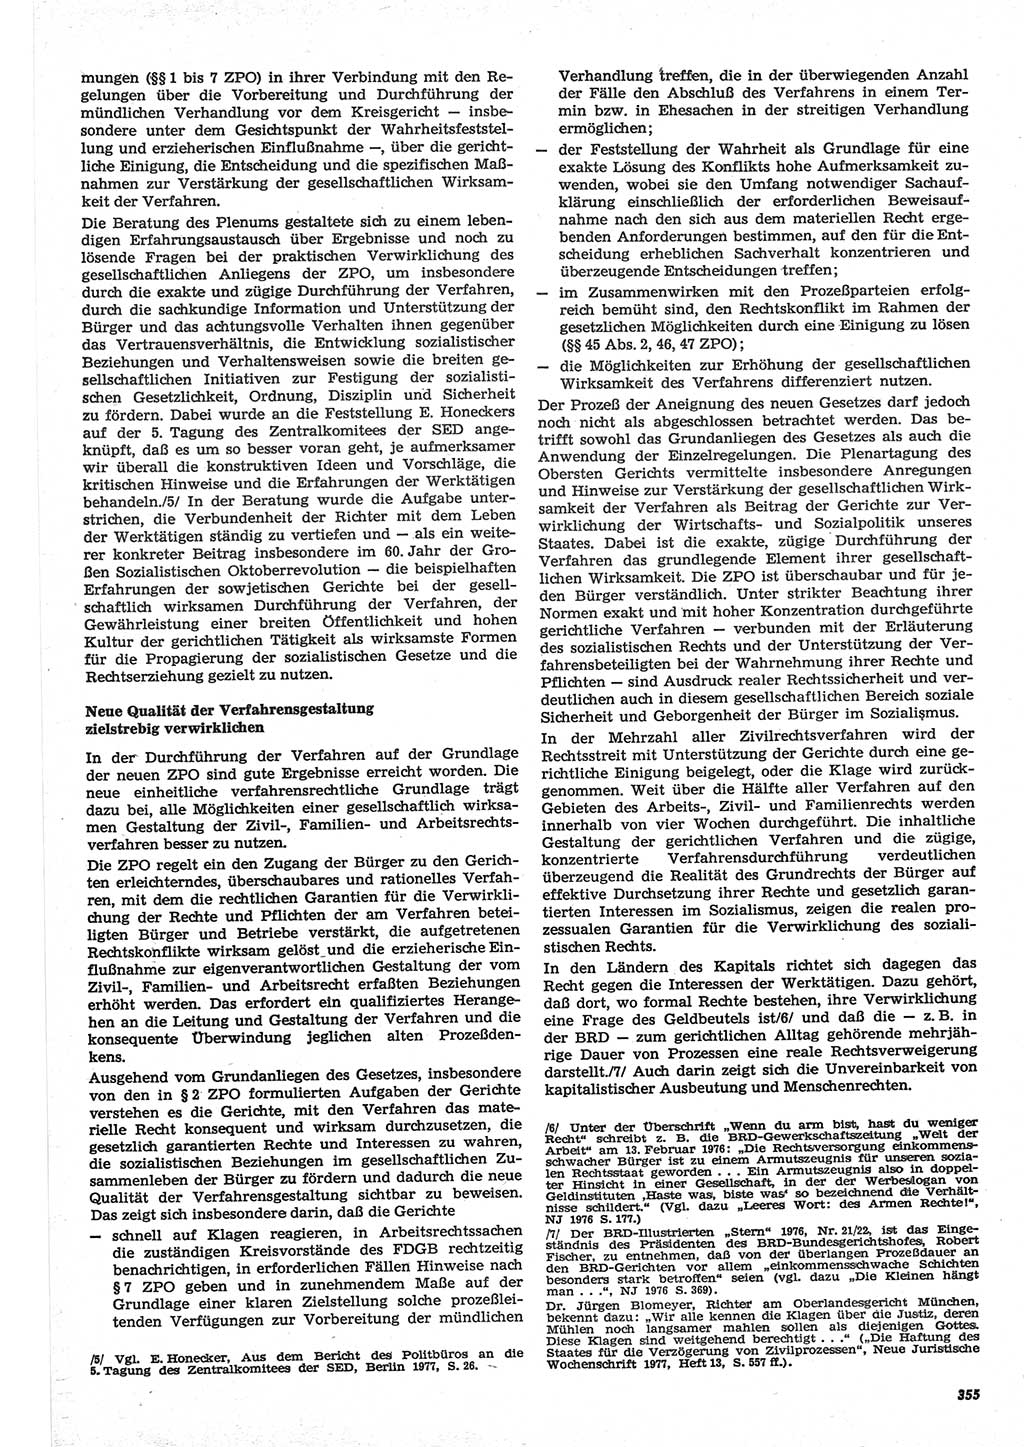 Neue Justiz (NJ), Zeitschrift für Recht und Rechtswissenschaft-Zeitschrift, sozialistisches Recht und Gesetzlichkeit, 31. Jahrgang 1977, Seite 355 (NJ DDR 1977, S. 355)